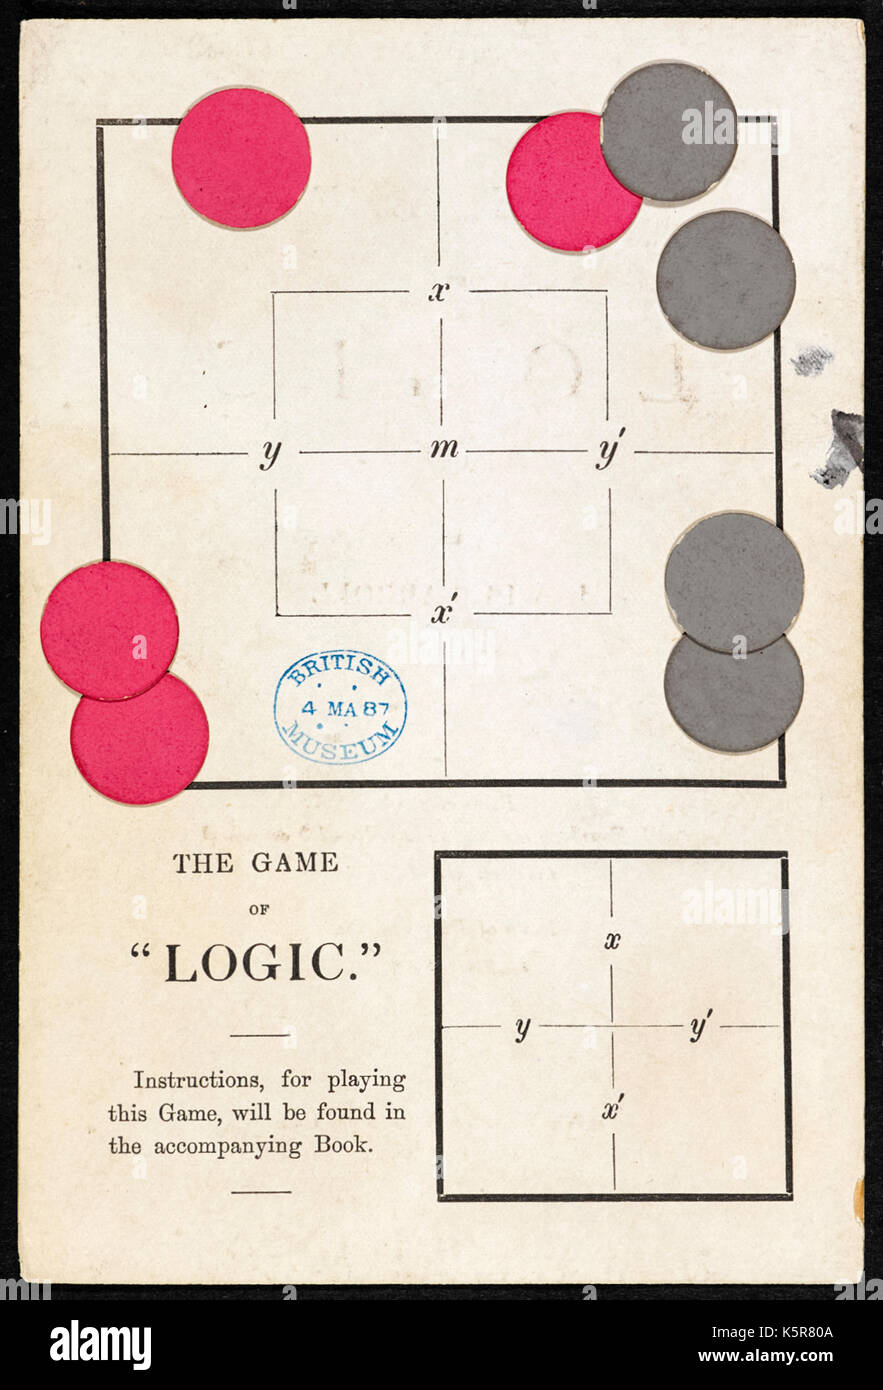 "El juego de la Lógica" por Lewis Caroll, seudónimo de Charles Lutwidge Dodgson (1832-1898) en 1887. Dodgson fue un matemático y este juego impugnados 'jugadores' para designar diversas declaraciones lógicas. Fotografía de tablero y fichas. Ver más información a continuación. Foto de stock